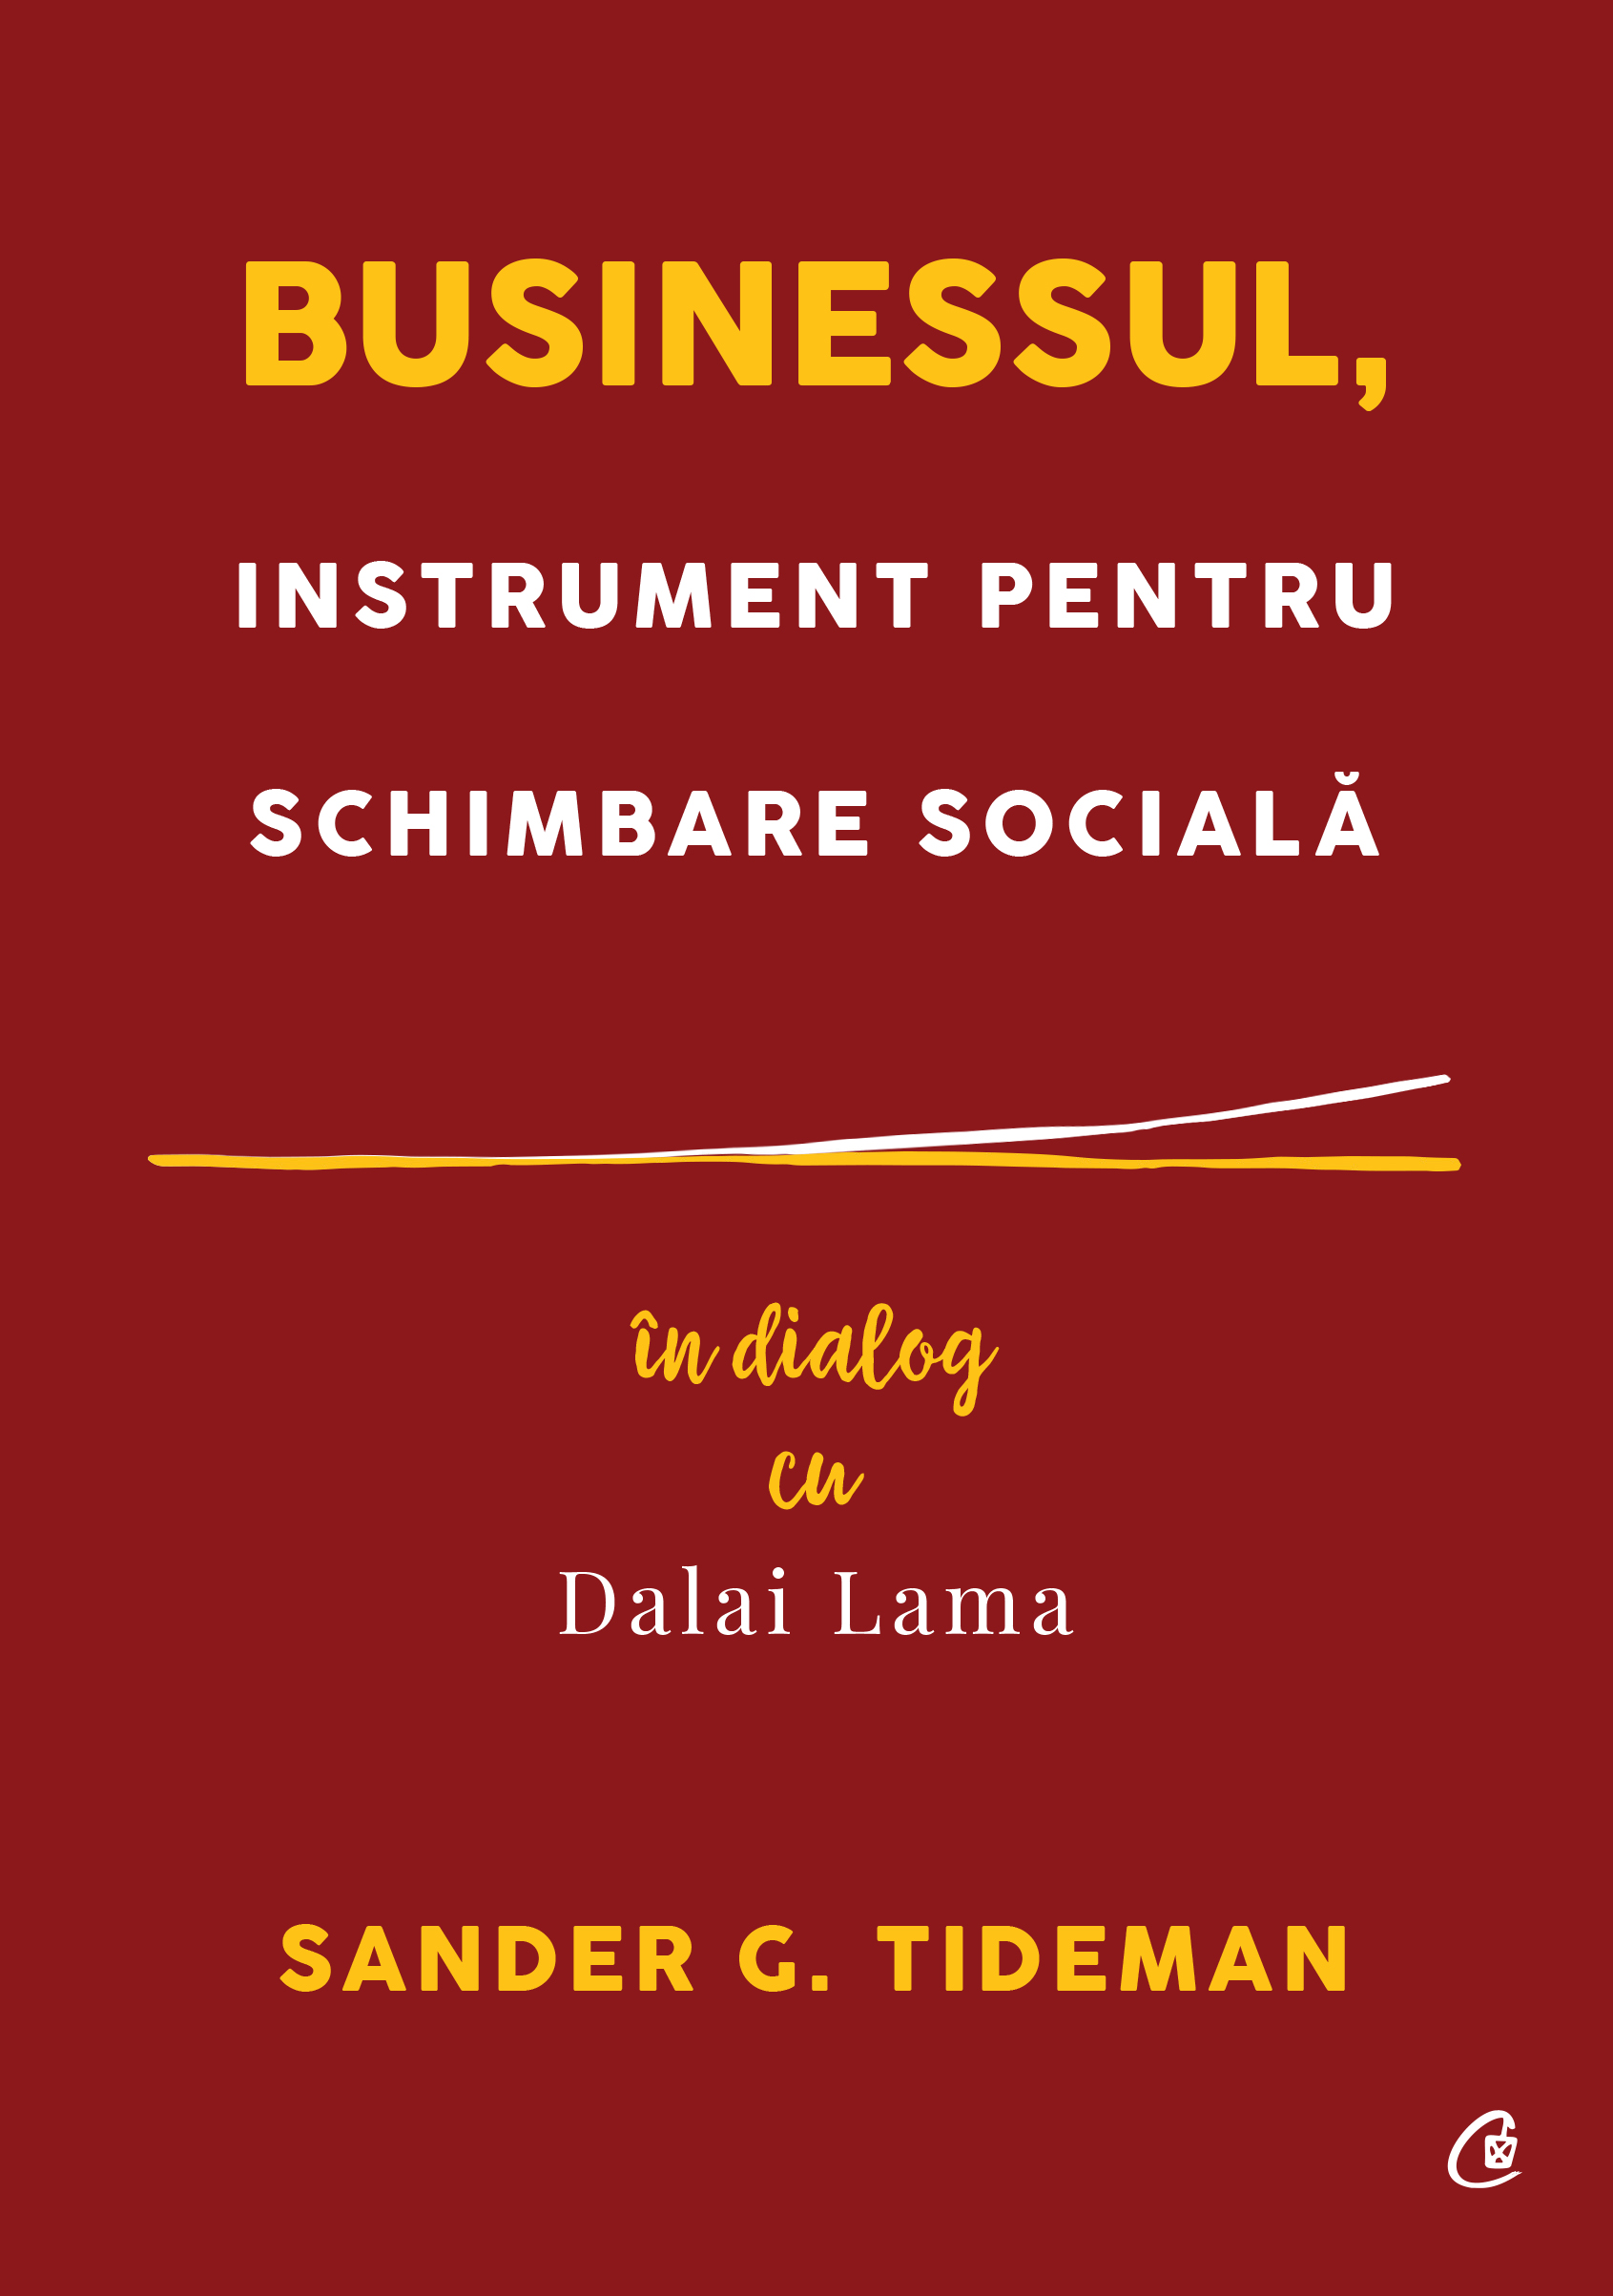 Businessul, instrument pentru schimbare sociala | Sander G. Tideman carturesti 2022